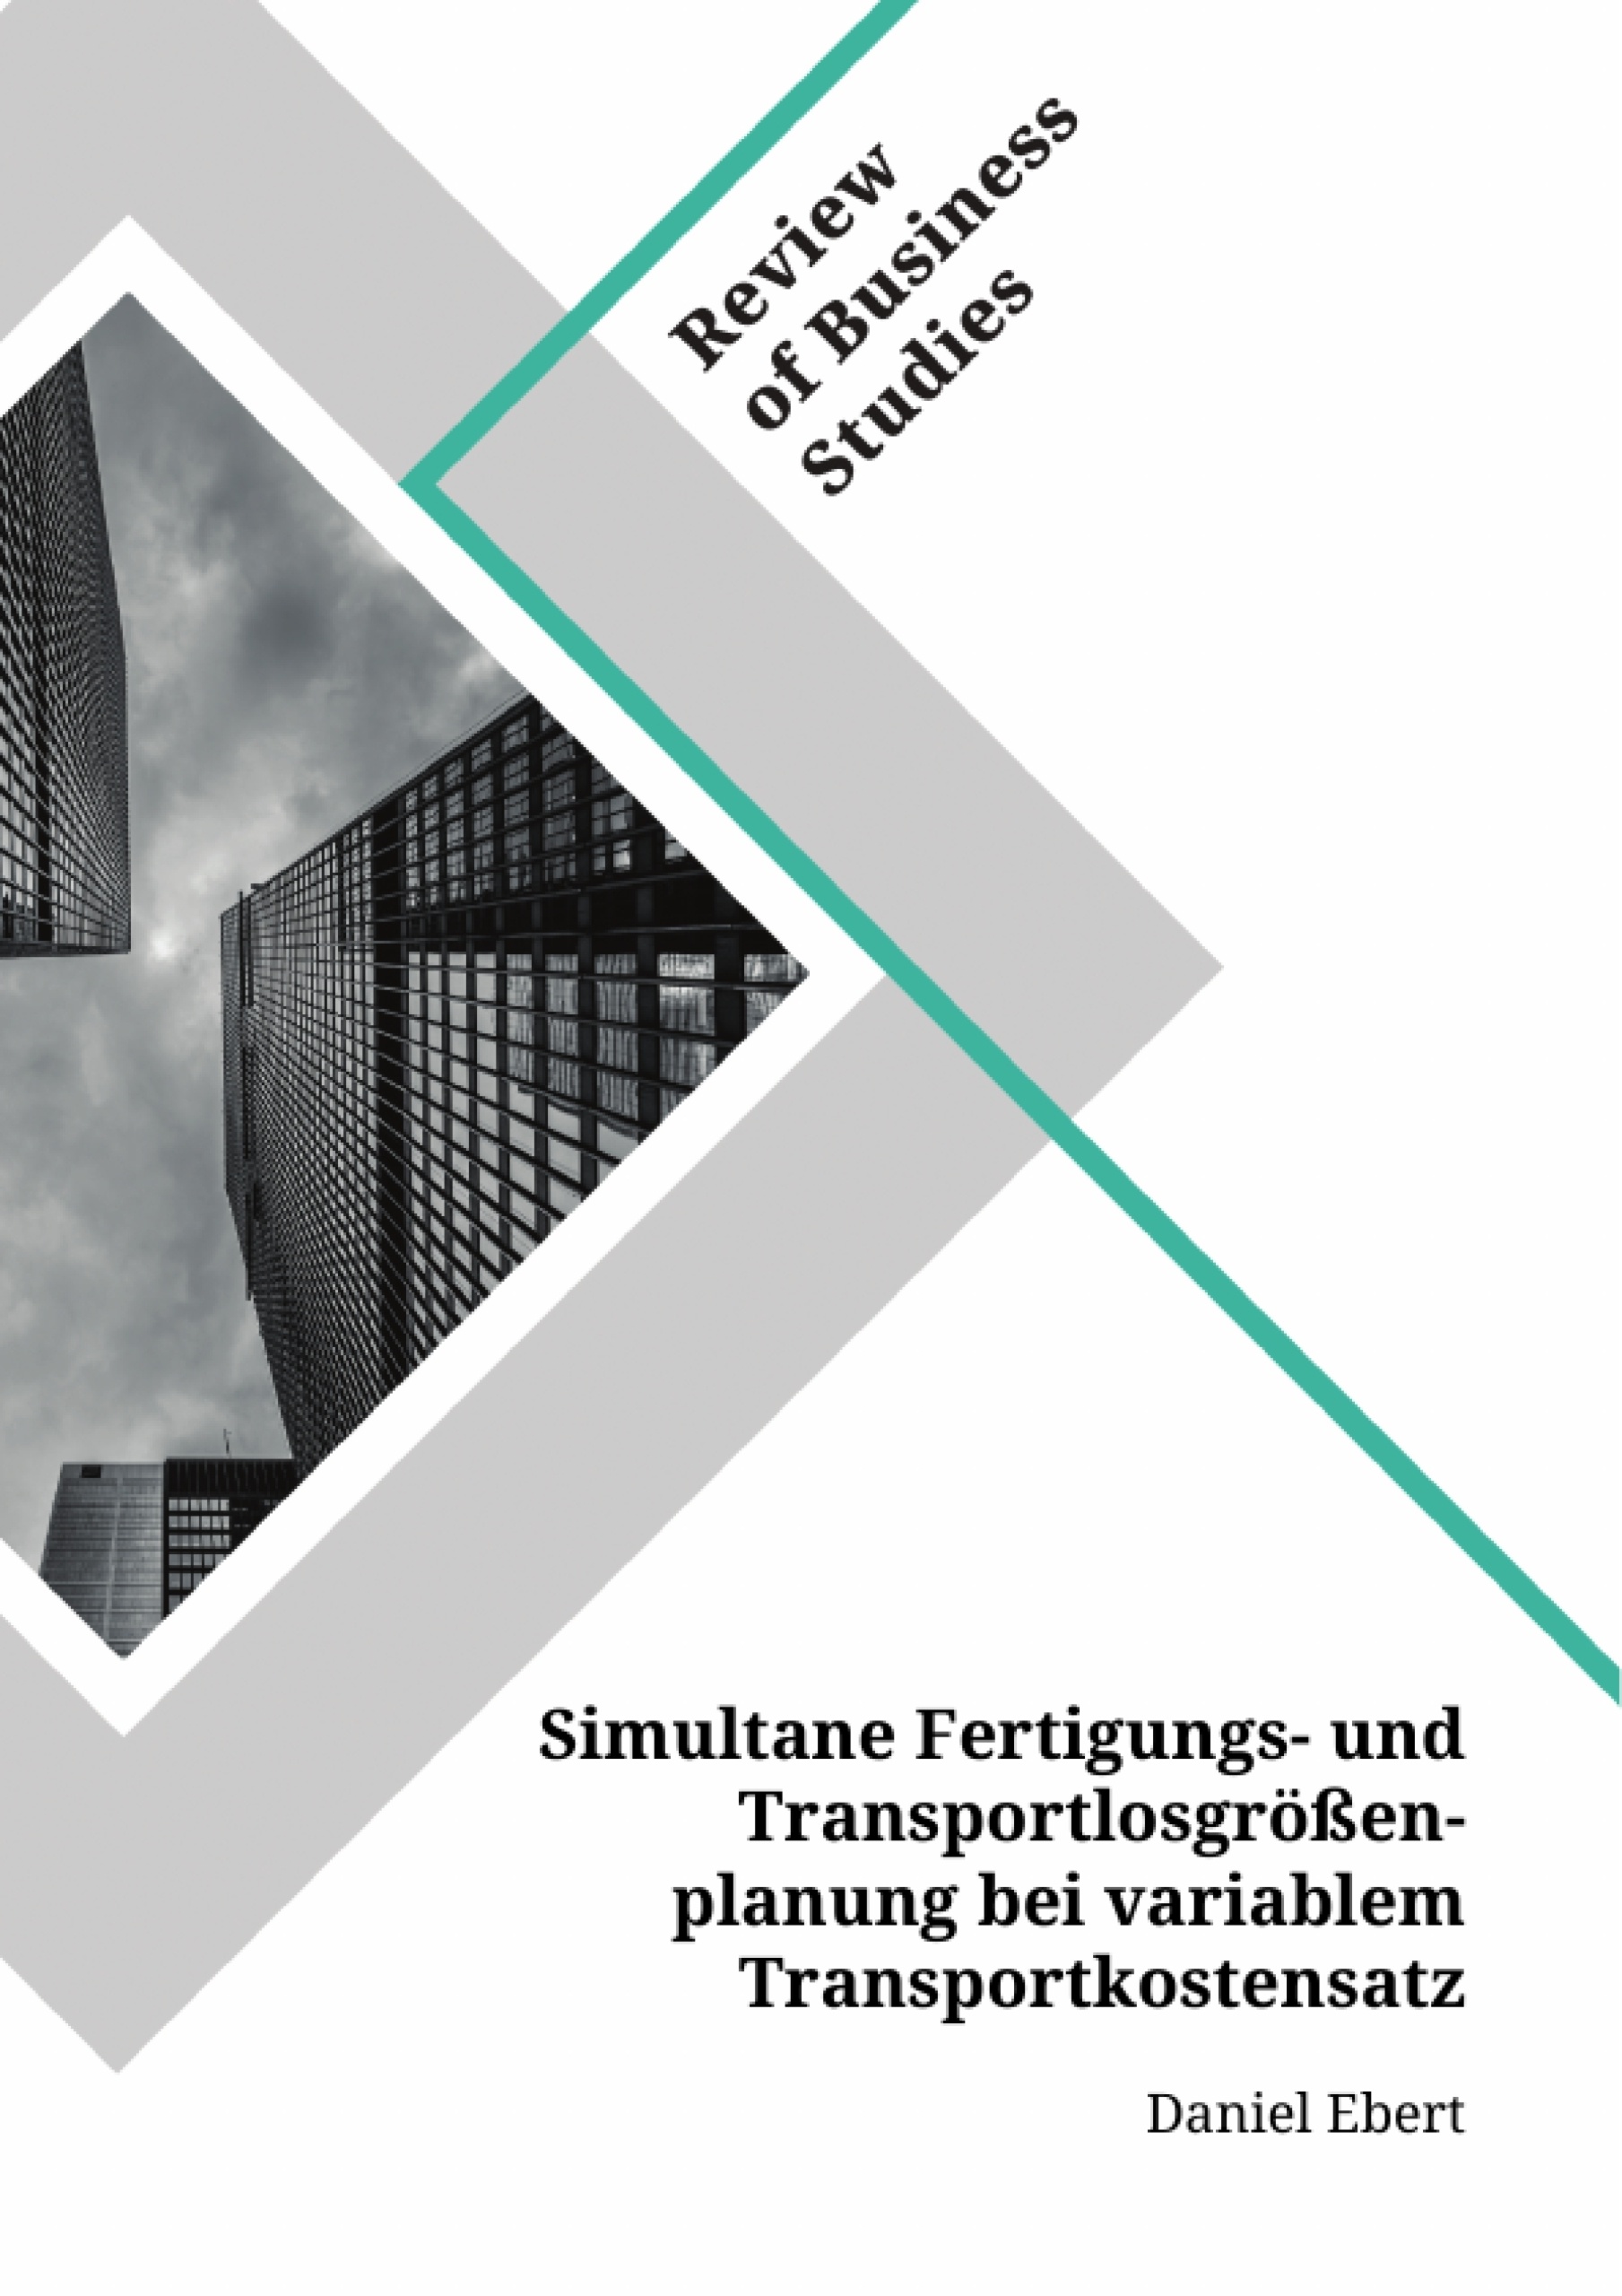 Titel: Simultane Fertigungs- und Transportlosgrößenplanung bei variablem Transportkostensatz